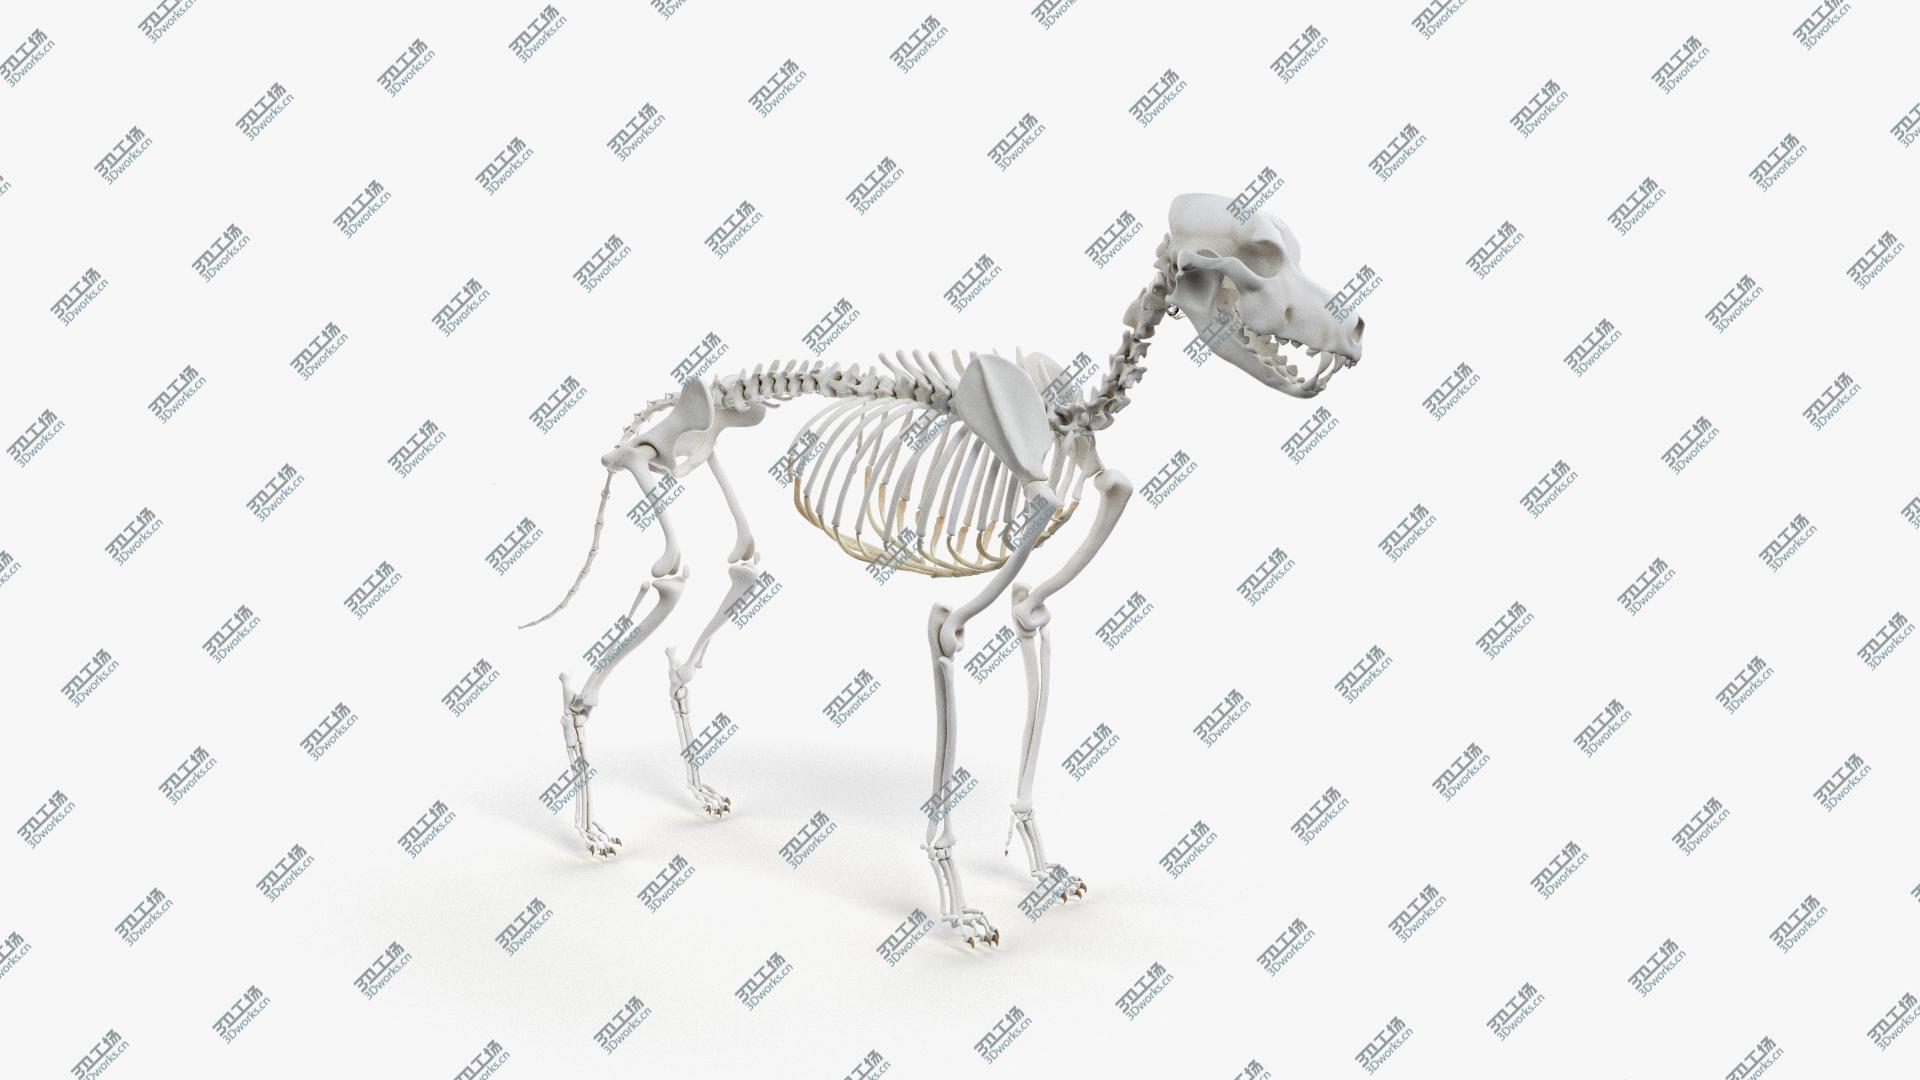 images/goods_img/202105071/Dog Skin, Skeleton And Organs 3D/4.jpg